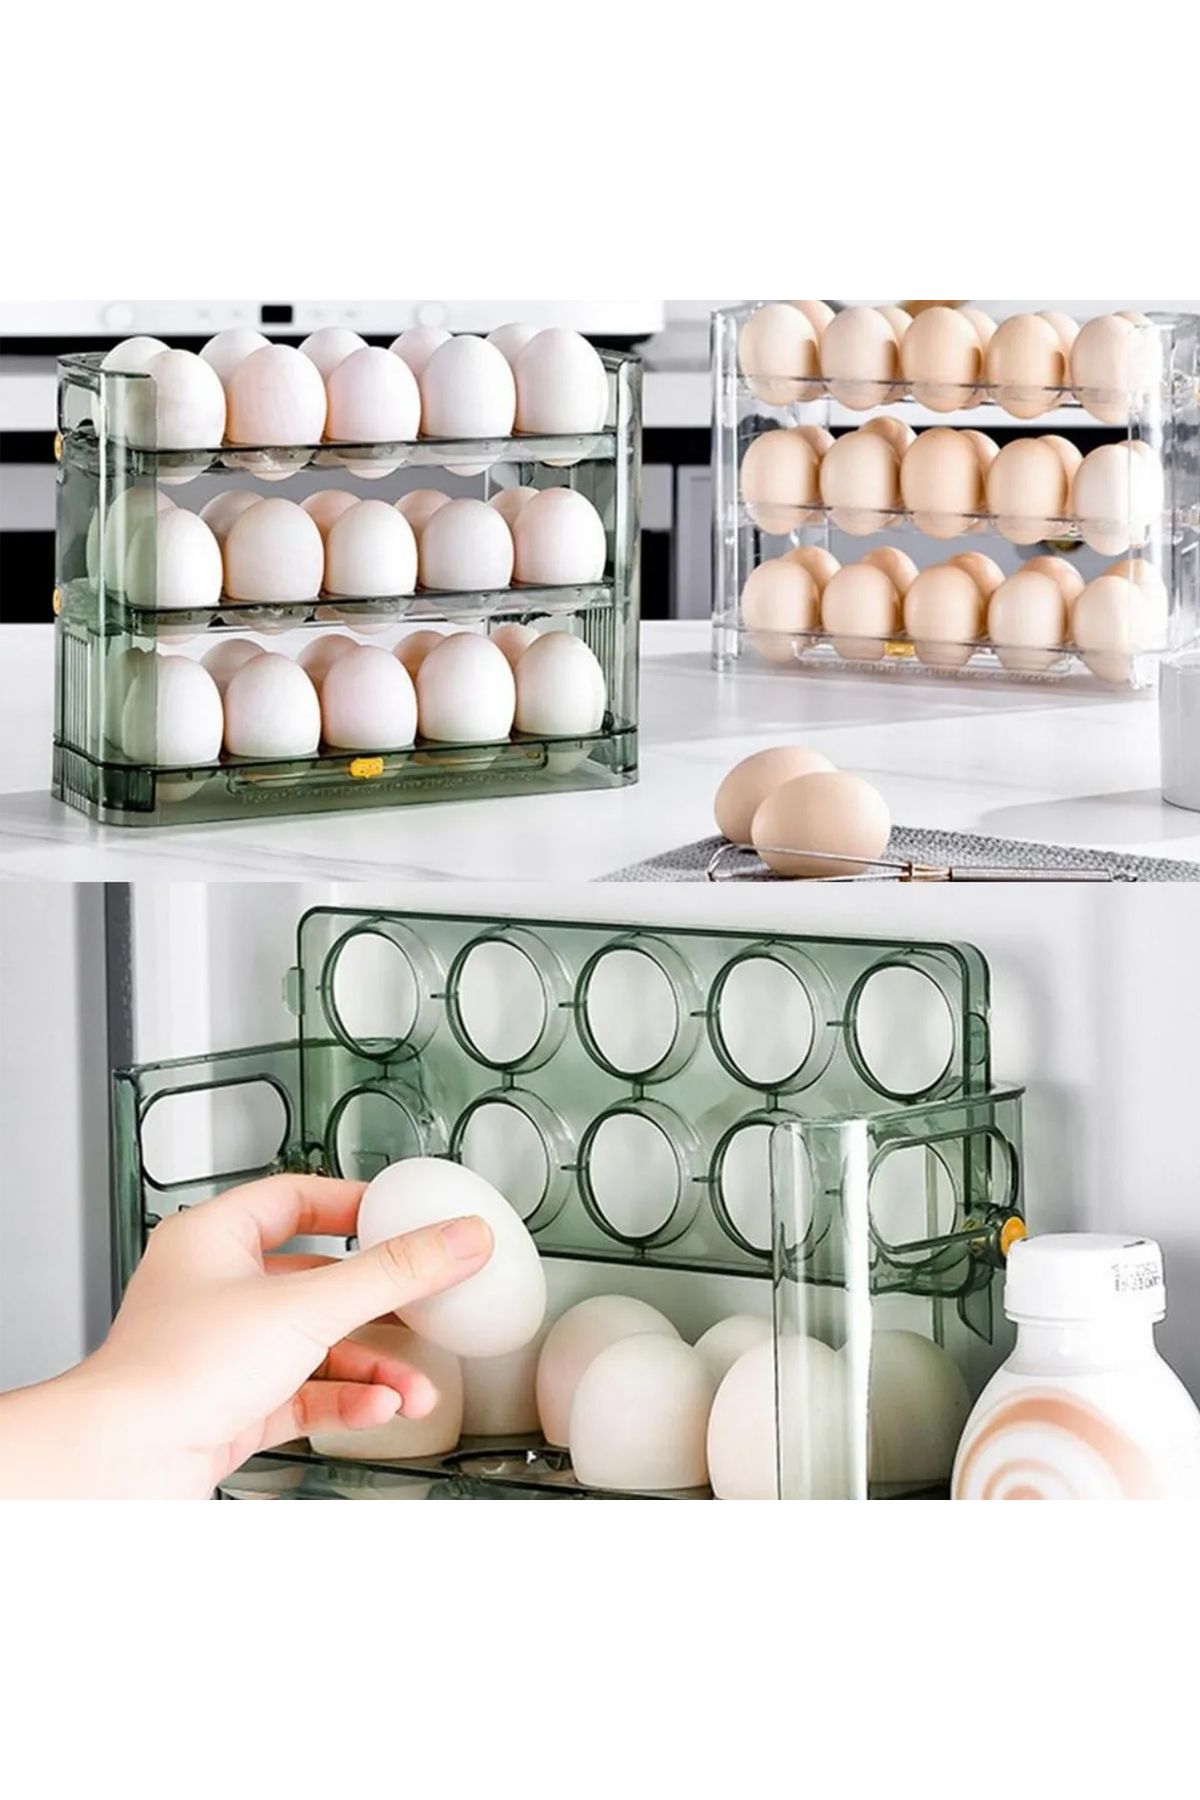 Suncook Pratik 30 Bölmeli Yumurtalık - 3 Katlı Yumurta Rafı Buzdolabı Organizeri ve Saklama Kabı